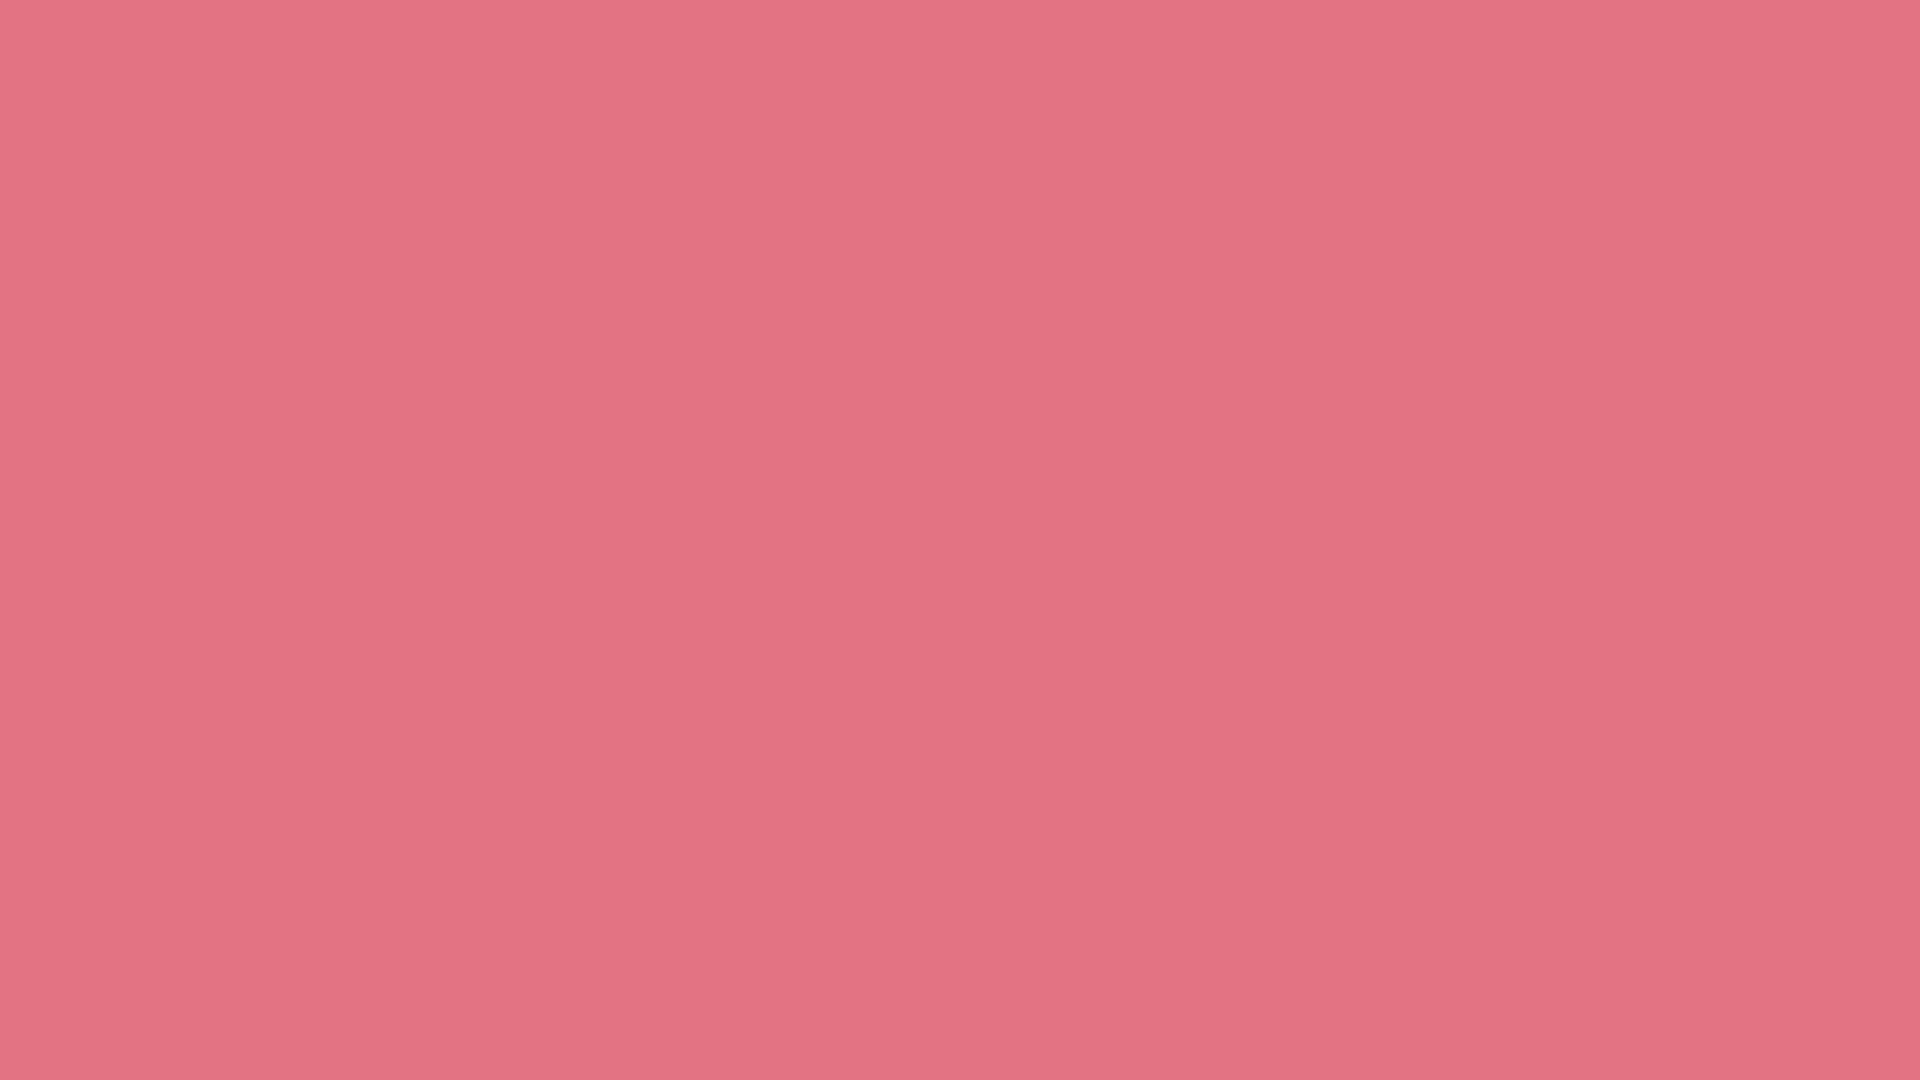 Màu hồng Dưa hấu là trào lưu hot nhất của mùa hè năm nay! Màu sắc tươi sáng và tinh tế này thực sự có sức hút đặc biệt. Hãy xem hình ảnh liên quan đến Watermelon Pink Color để cảm nhận sức mạnh của nó.